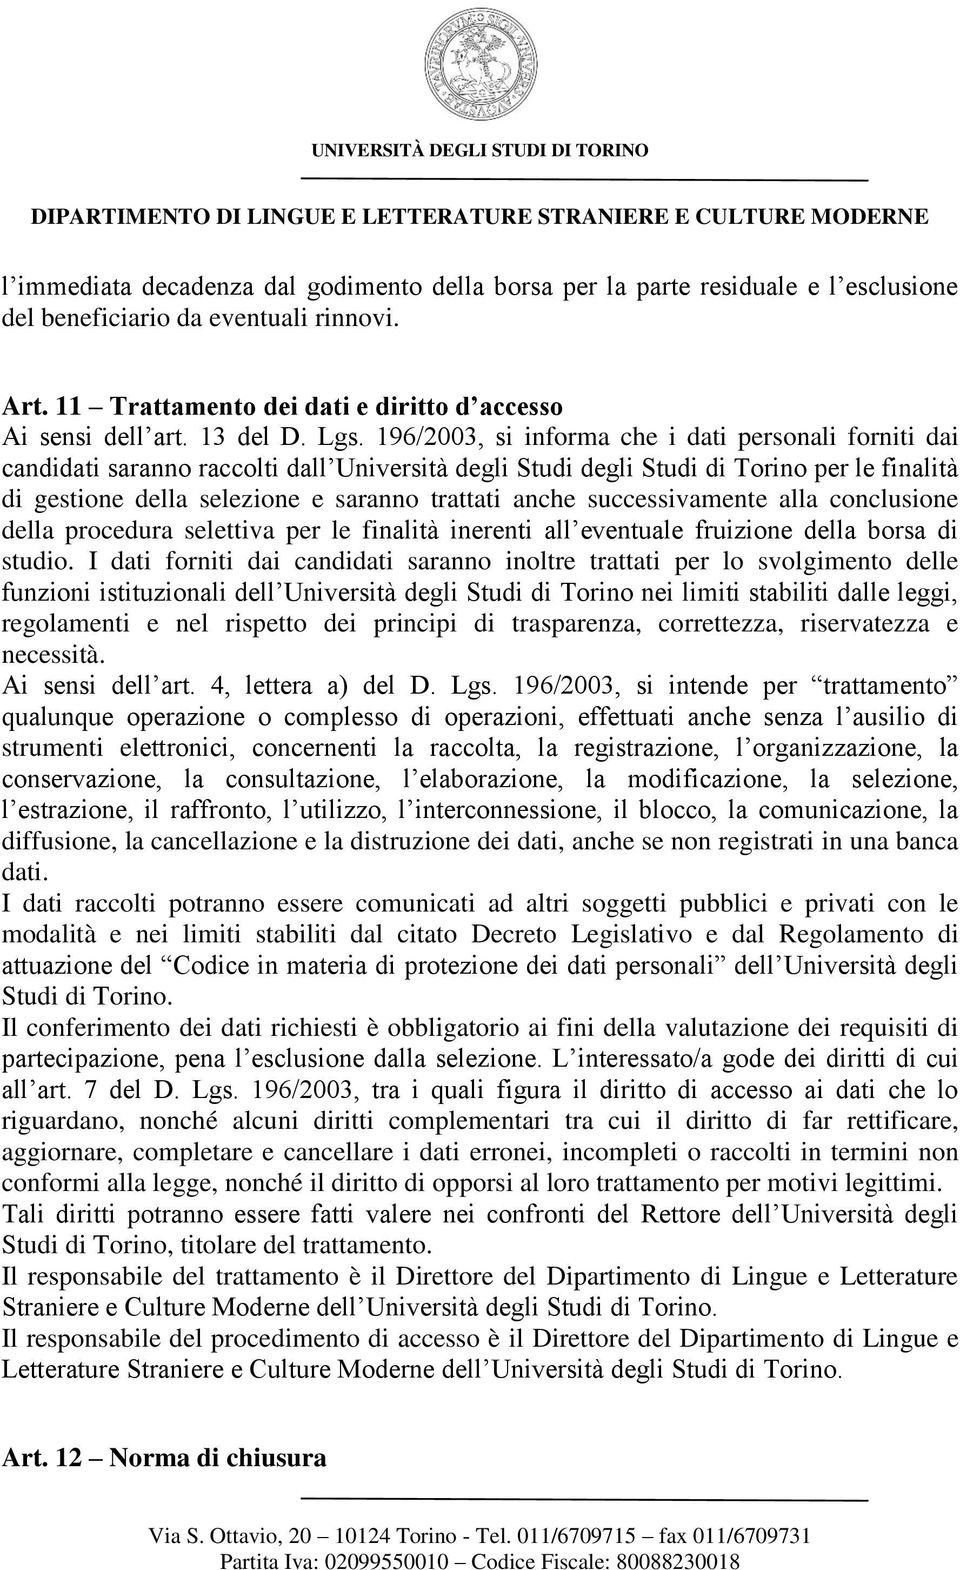 196/2003, si informa che i dati personali forniti dai candidati saranno raccolti dall Università degli Studi degli Studi di Torino per le finalità di gestione della selezione e saranno trattati anche